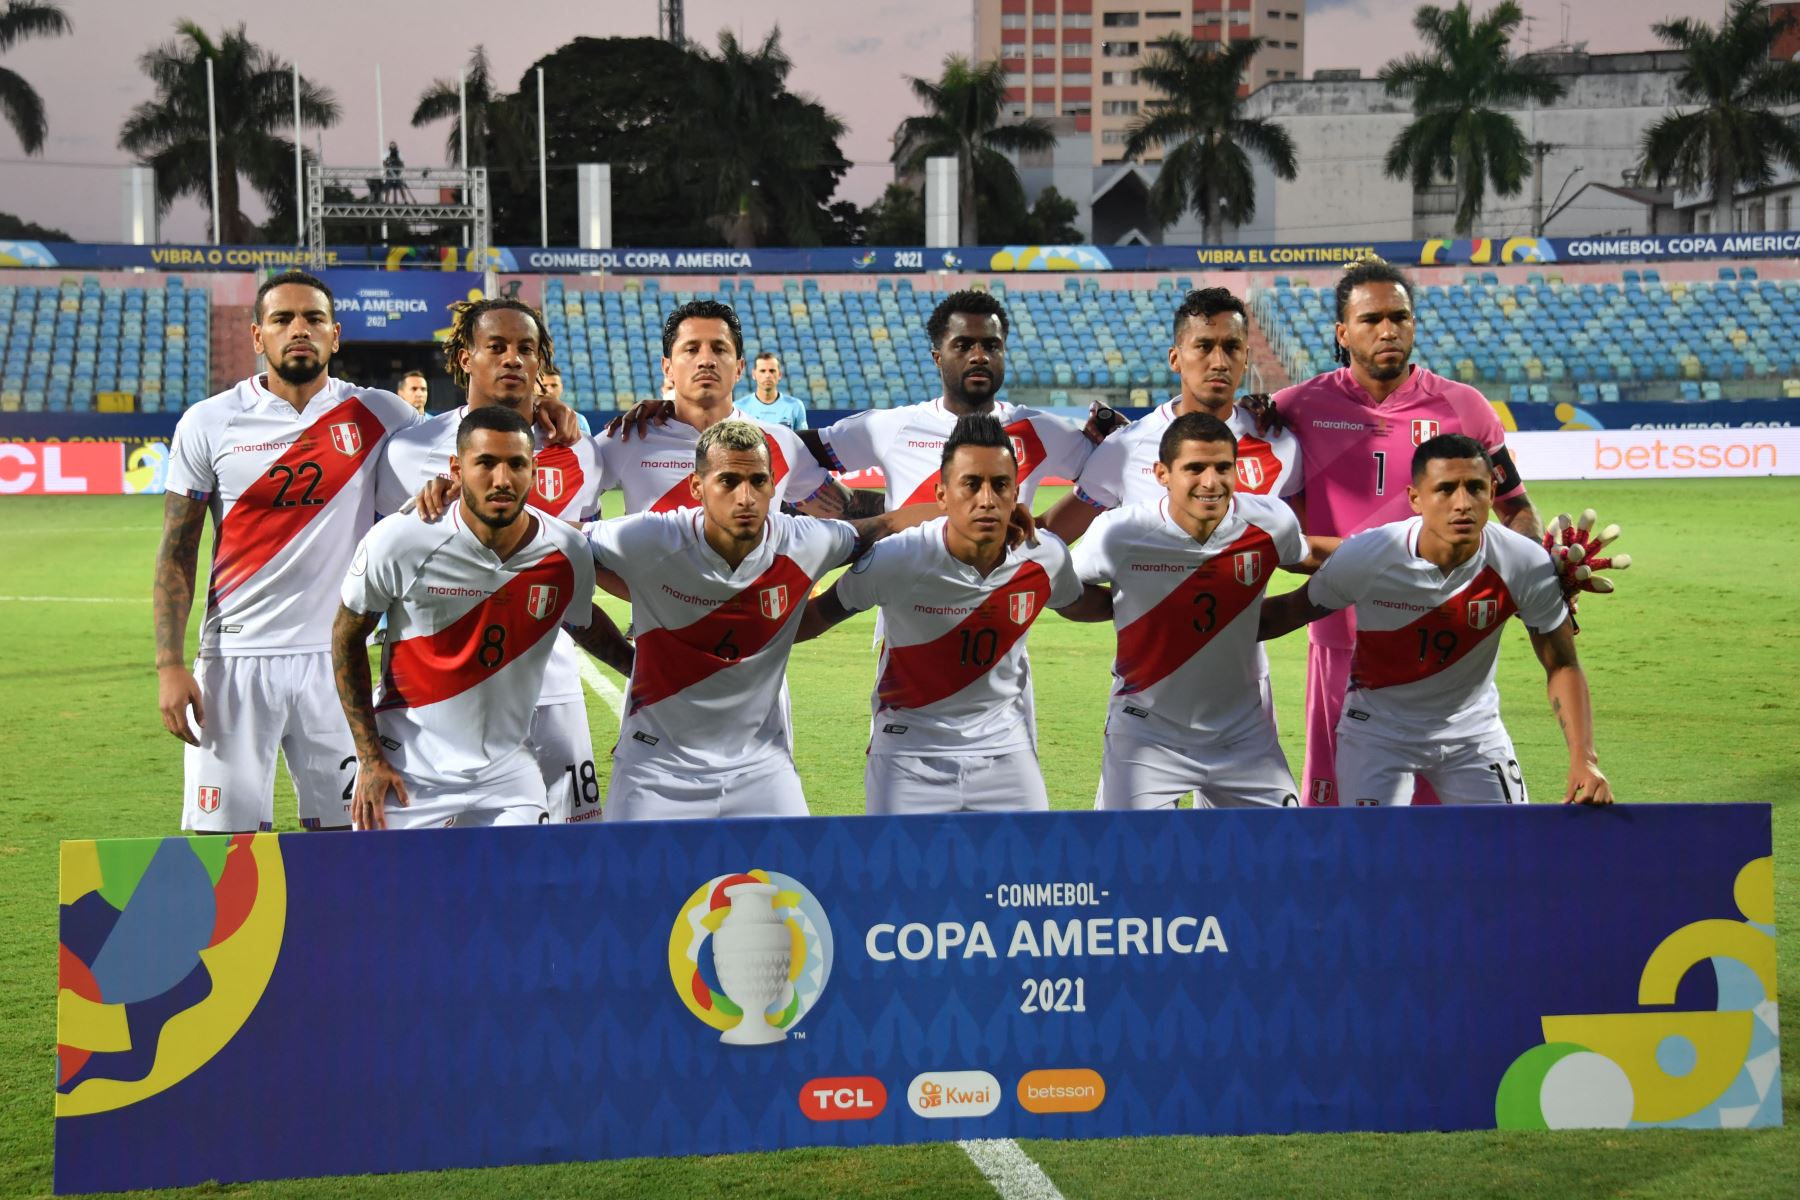 Los jugadores de Perú posan para una foto antes del inicio del partido de la fase de grupos del torneo de fútbol Conmebol Copa América 2021 contra Ecuador en el Estadio Olímpico de Goiania, Brasil.
Foto: AFP